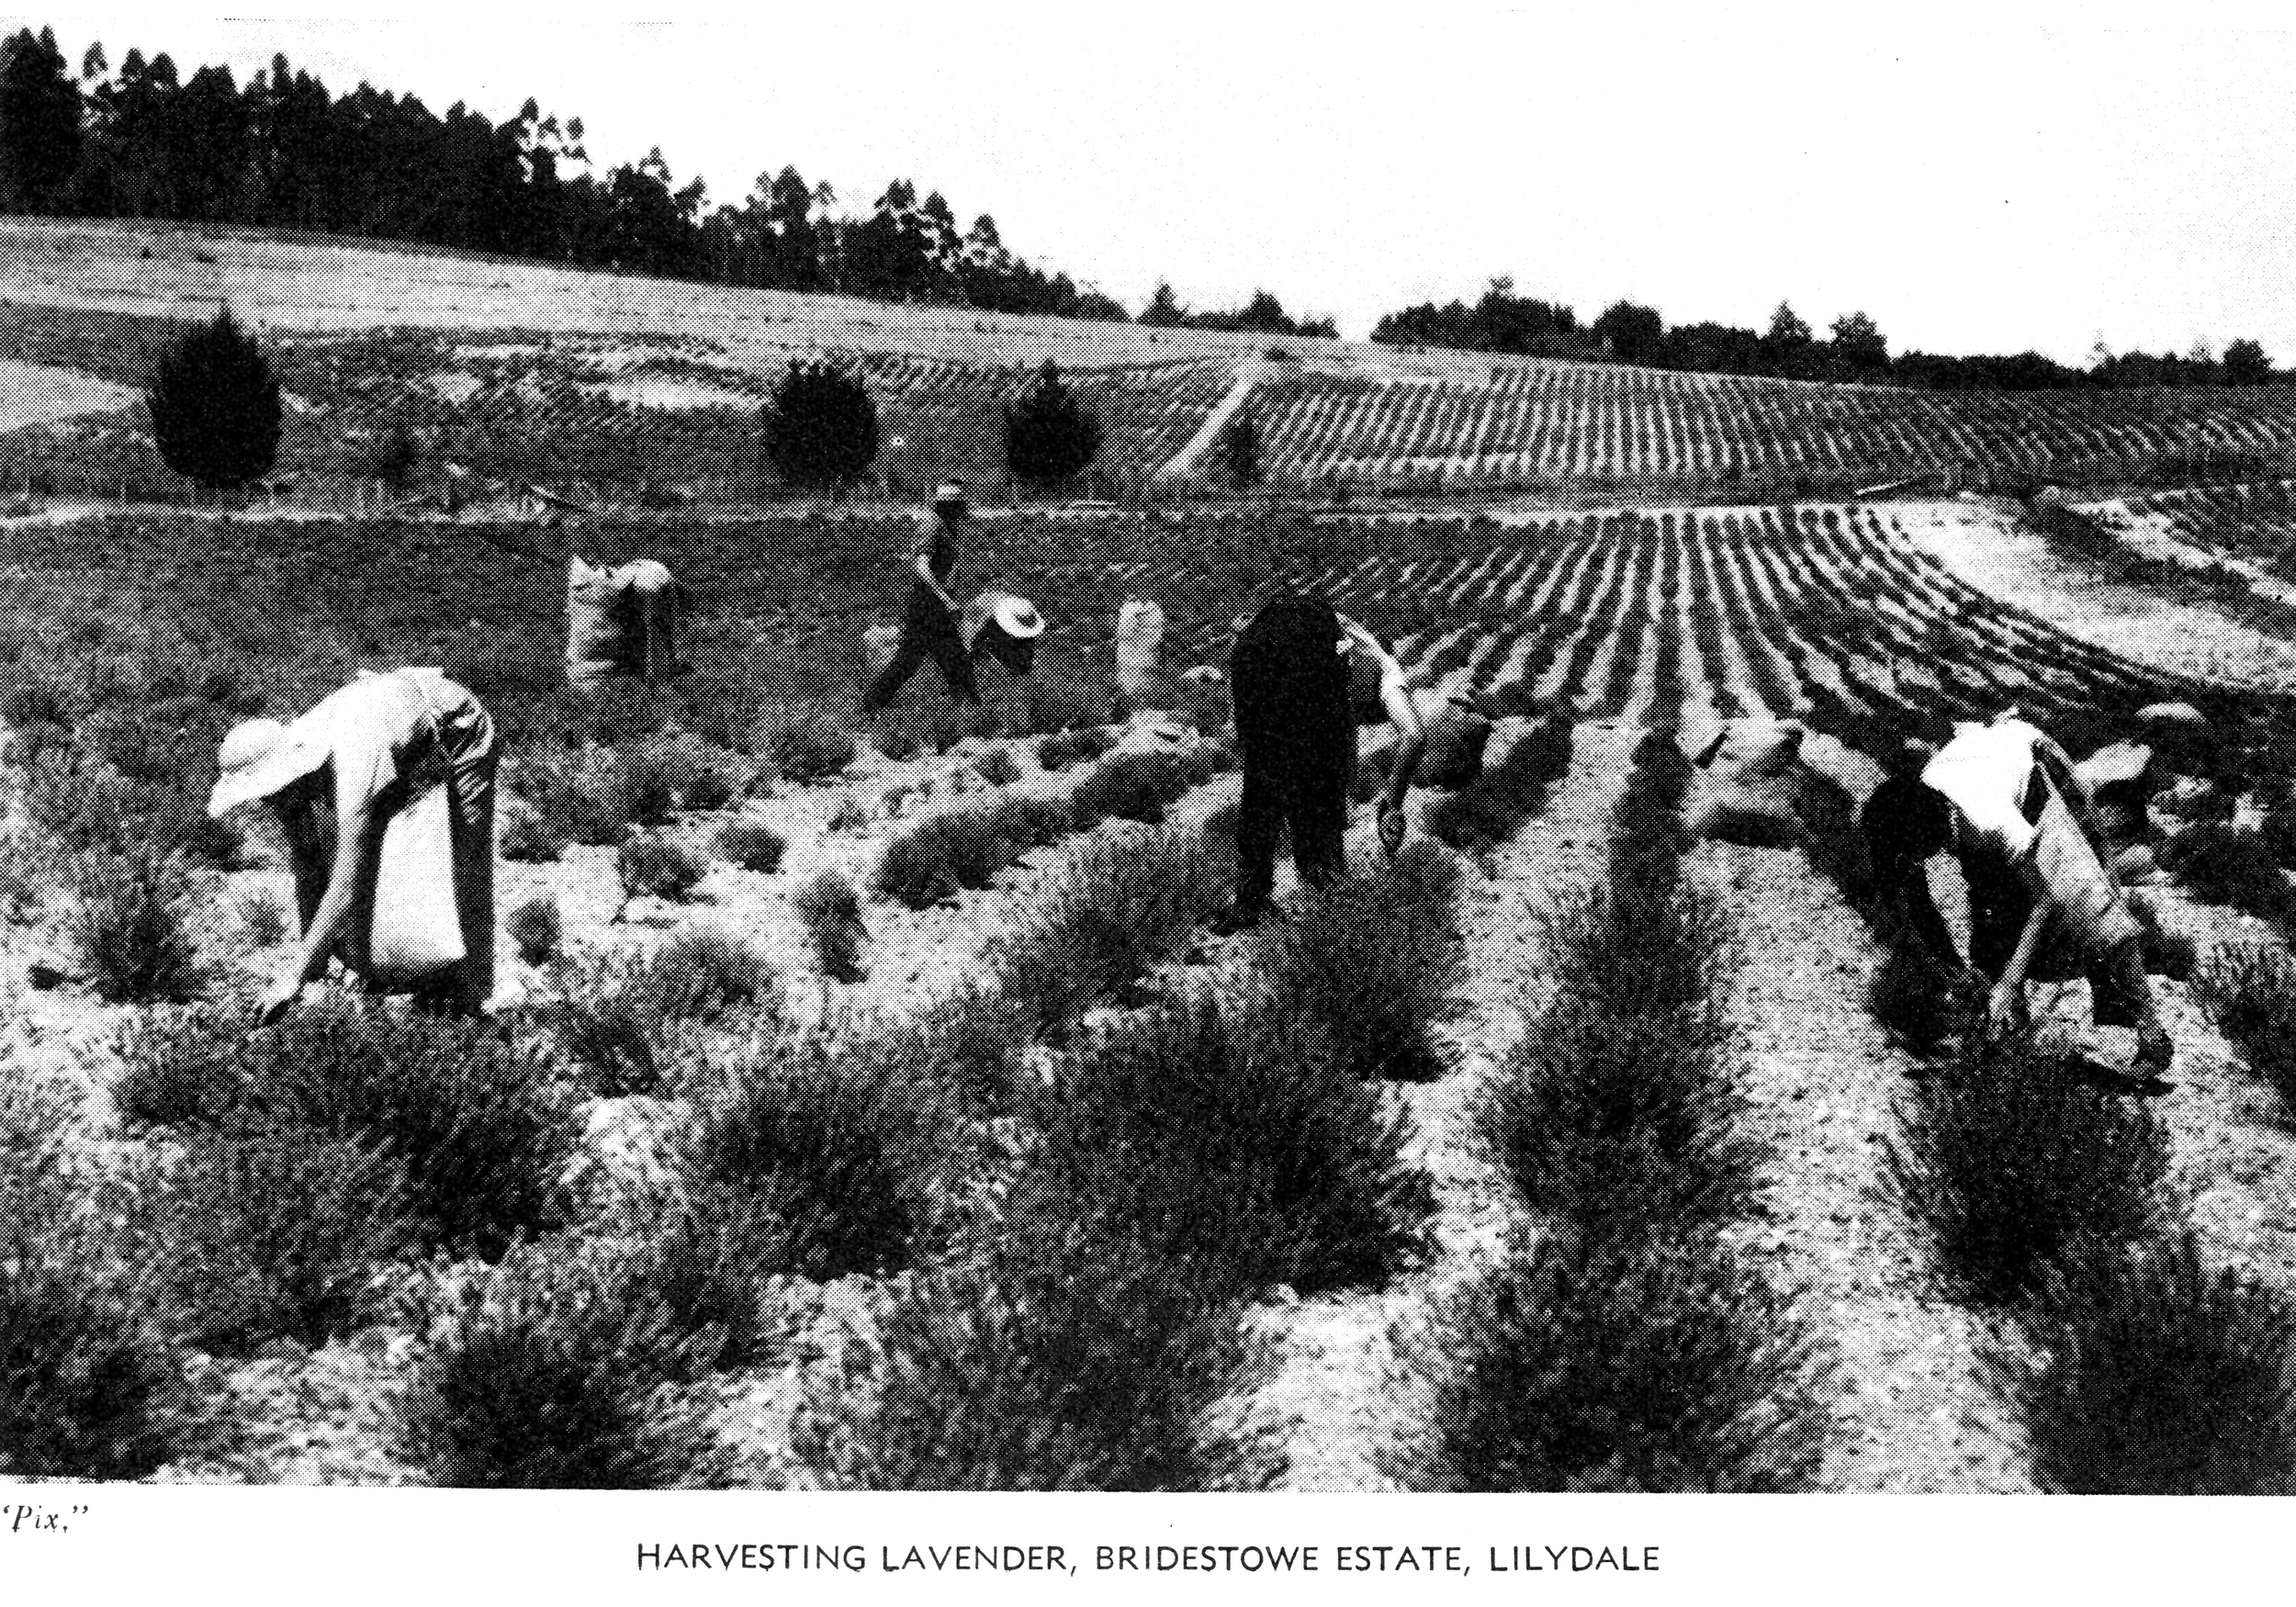  Harvesting lavender Bridestowe Estate, Lilydale 